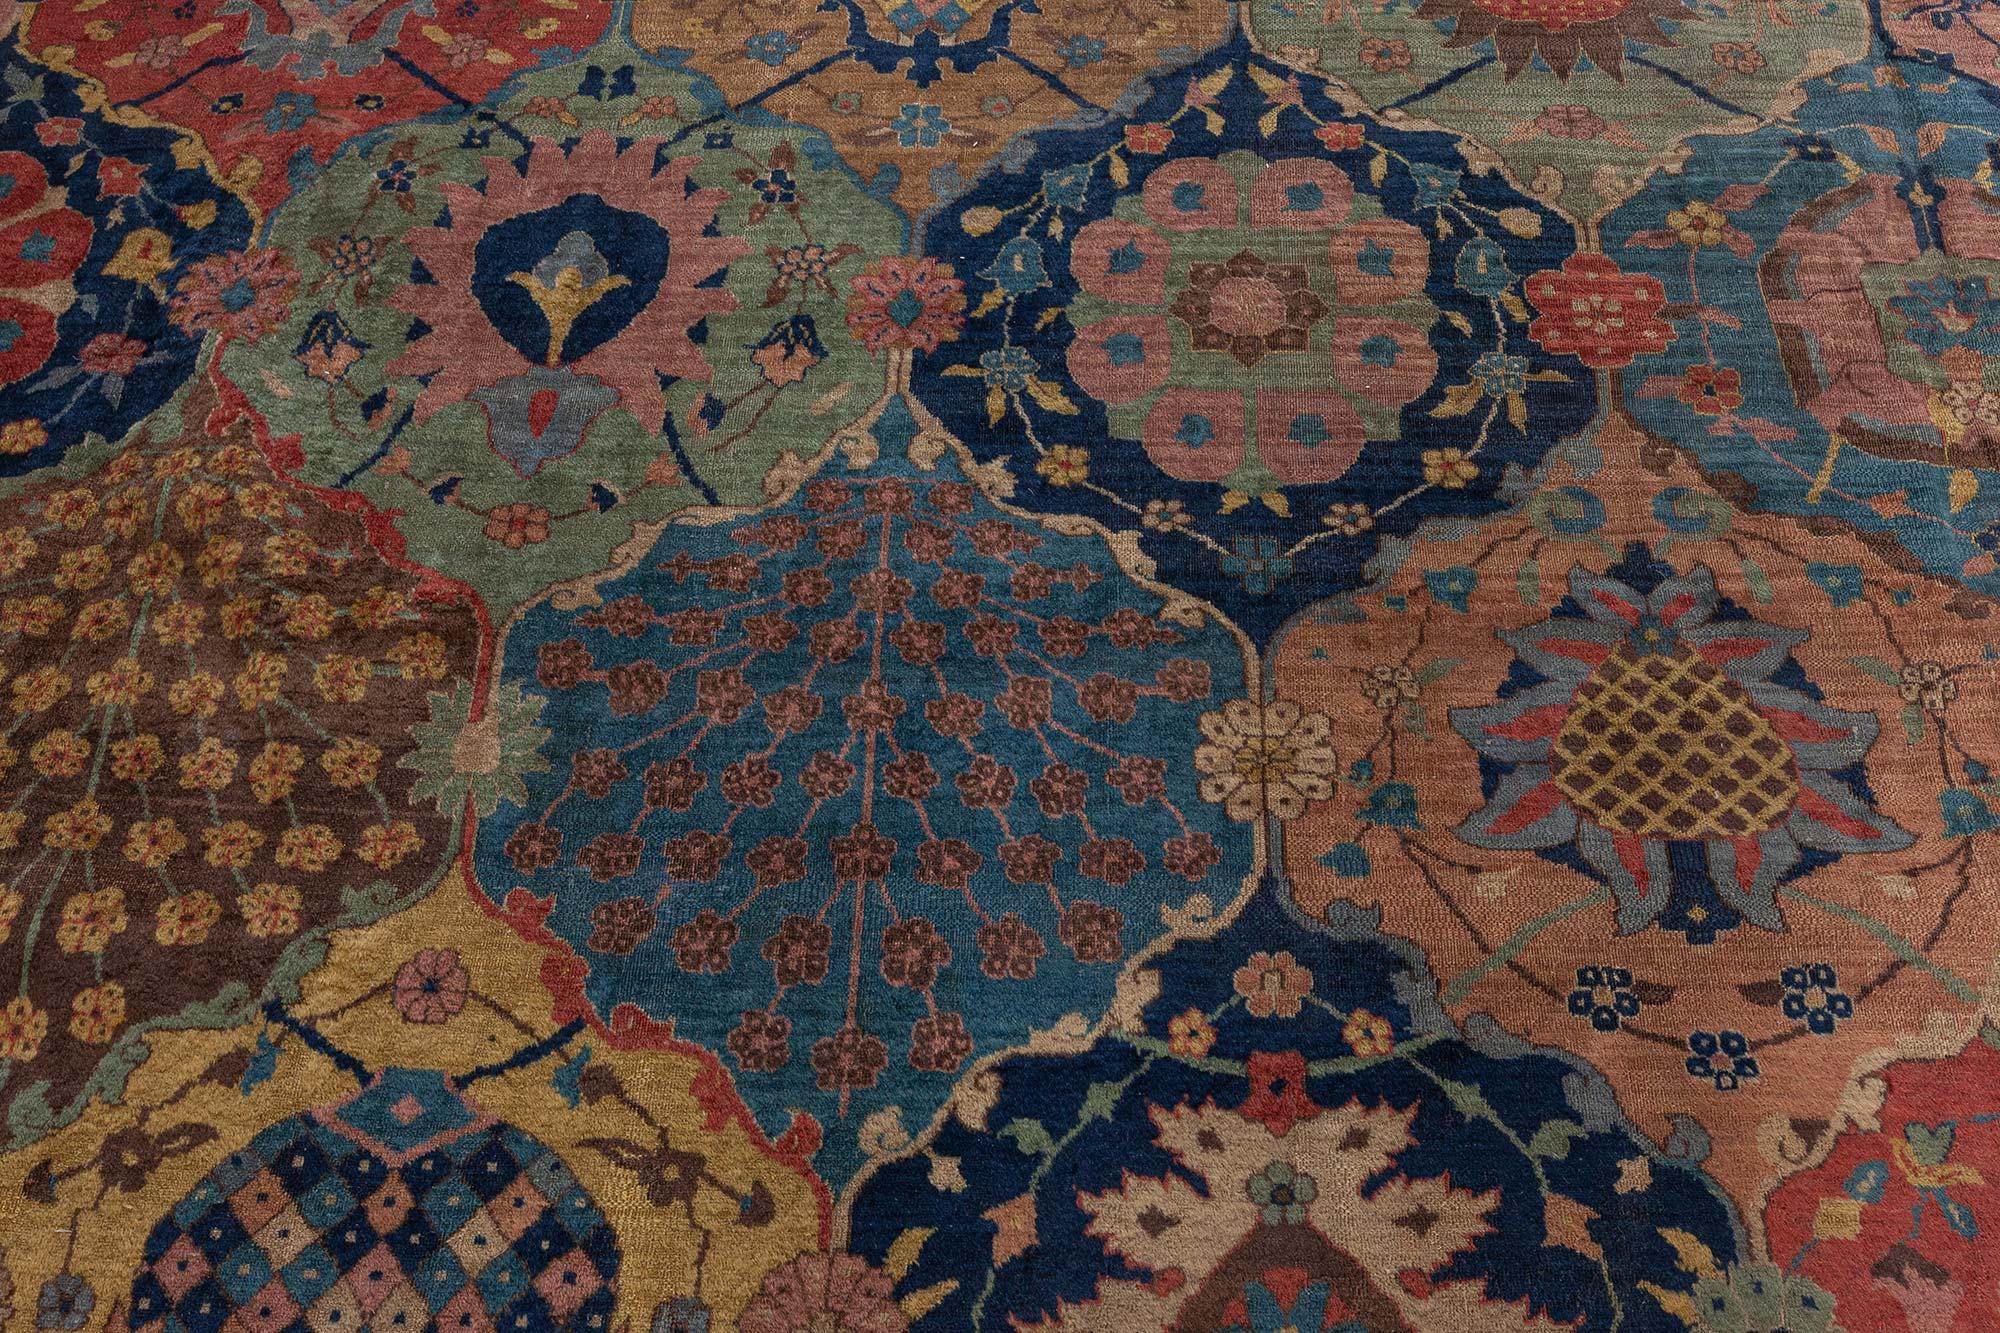 Antique botanic Indian carpet (size adjusted) 
Size: 12'8